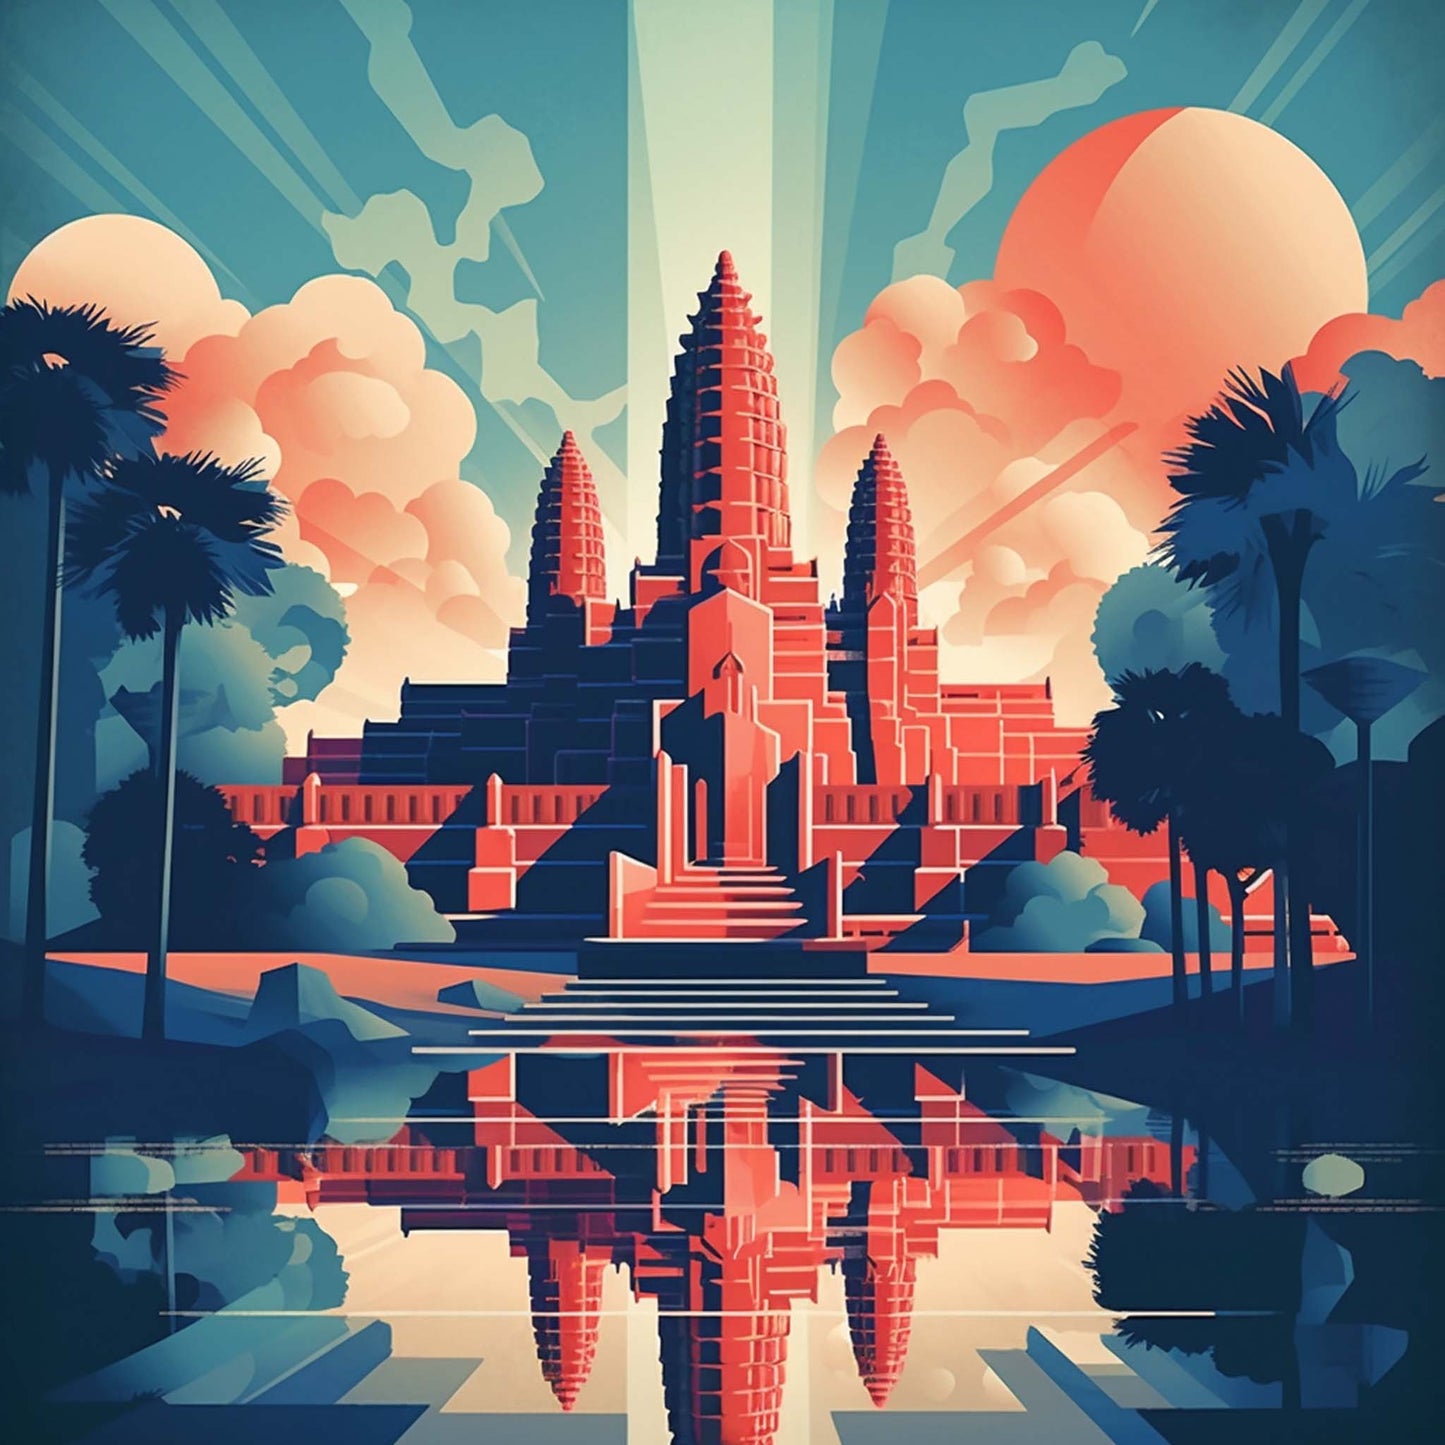 Urbanisto - Angkor Wat - Wandbild in der Stilrichtung des Minimalismus